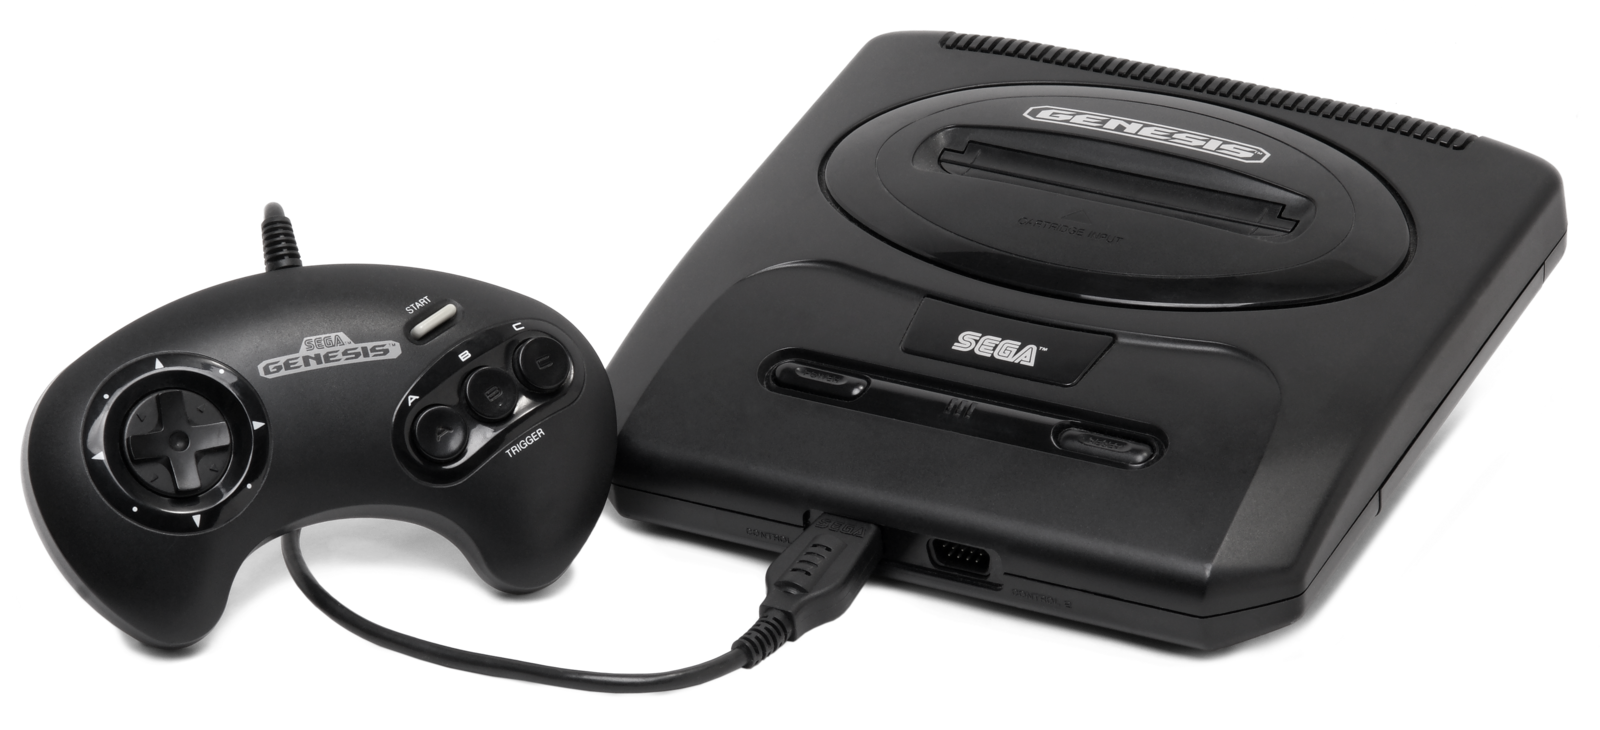 Sega Genesis Model 2 Console Bundle (MK-1631)